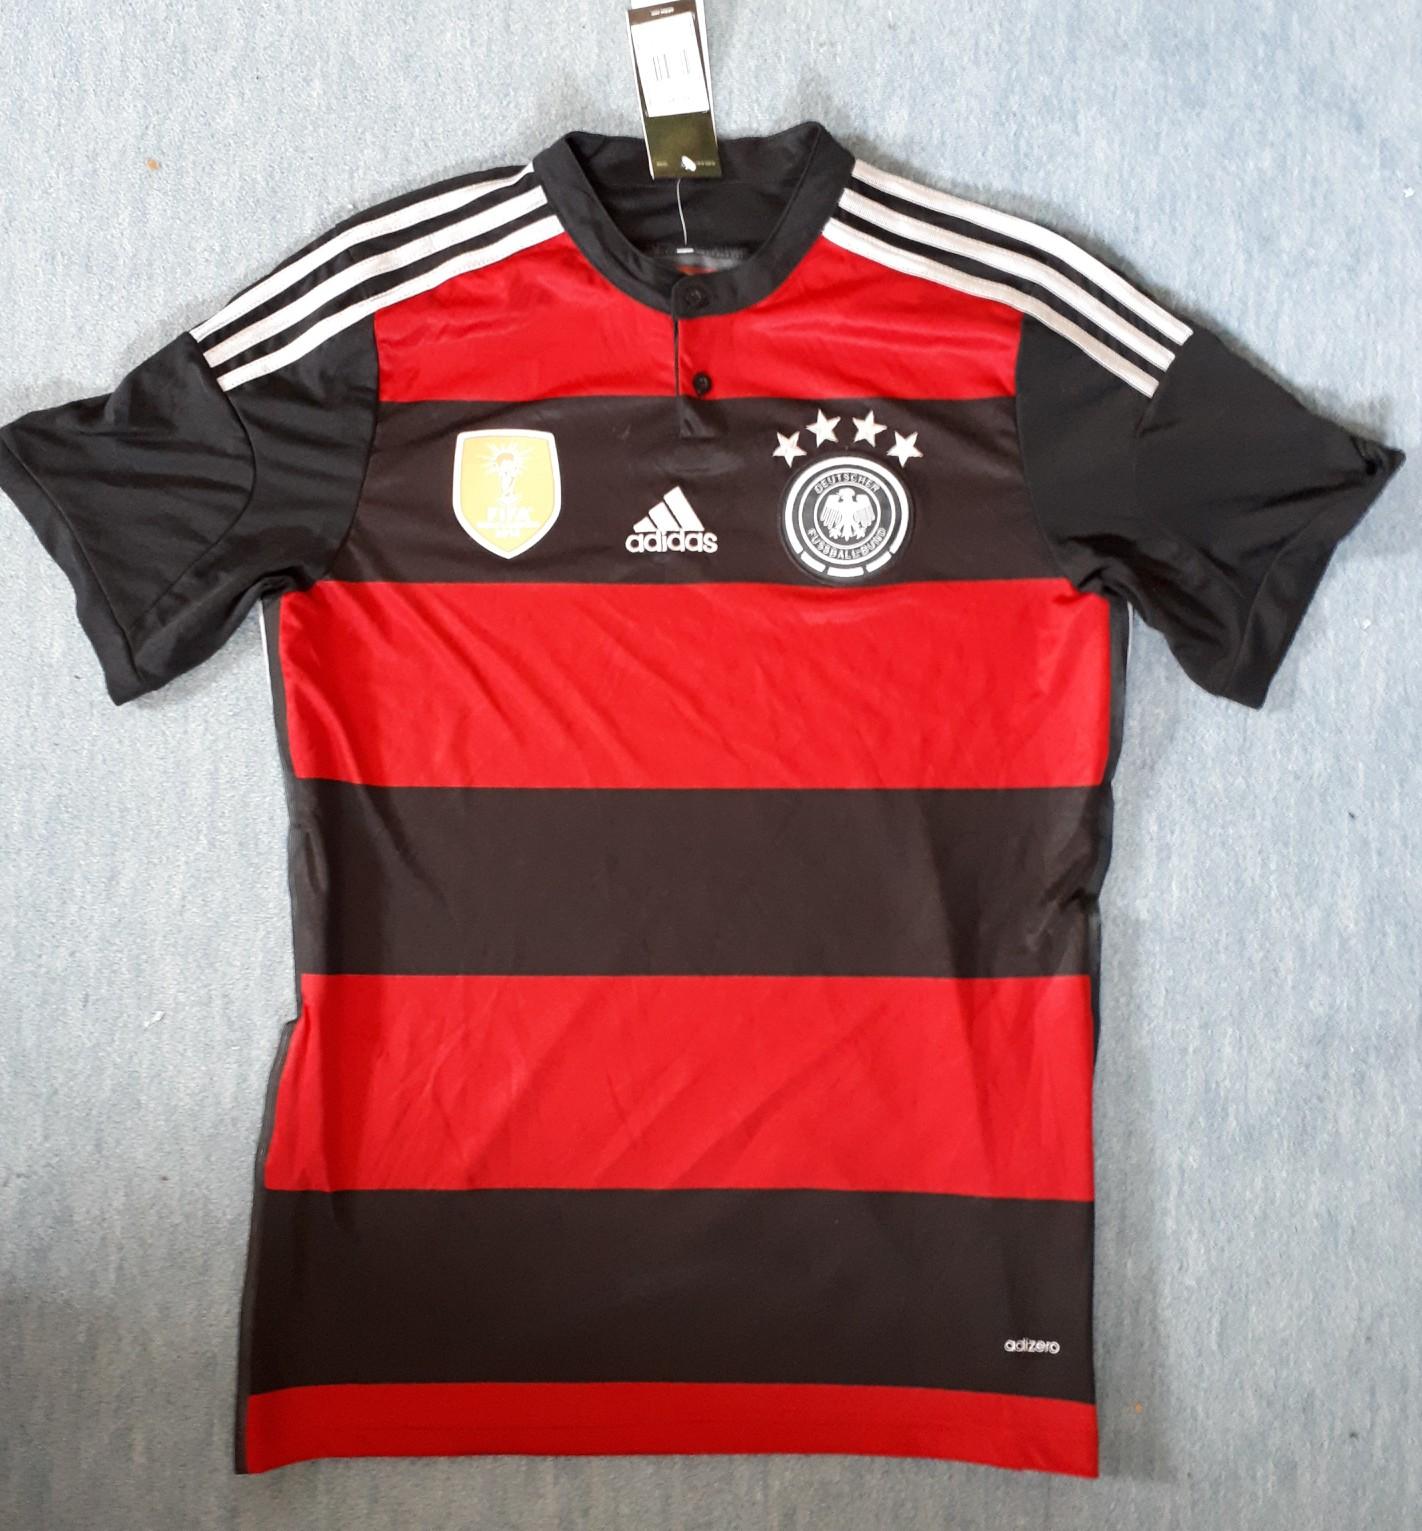 Etikett NEU m Deutschland Trikot WM 2014 OVP XL 3 Sterne  DFB  -addidas 